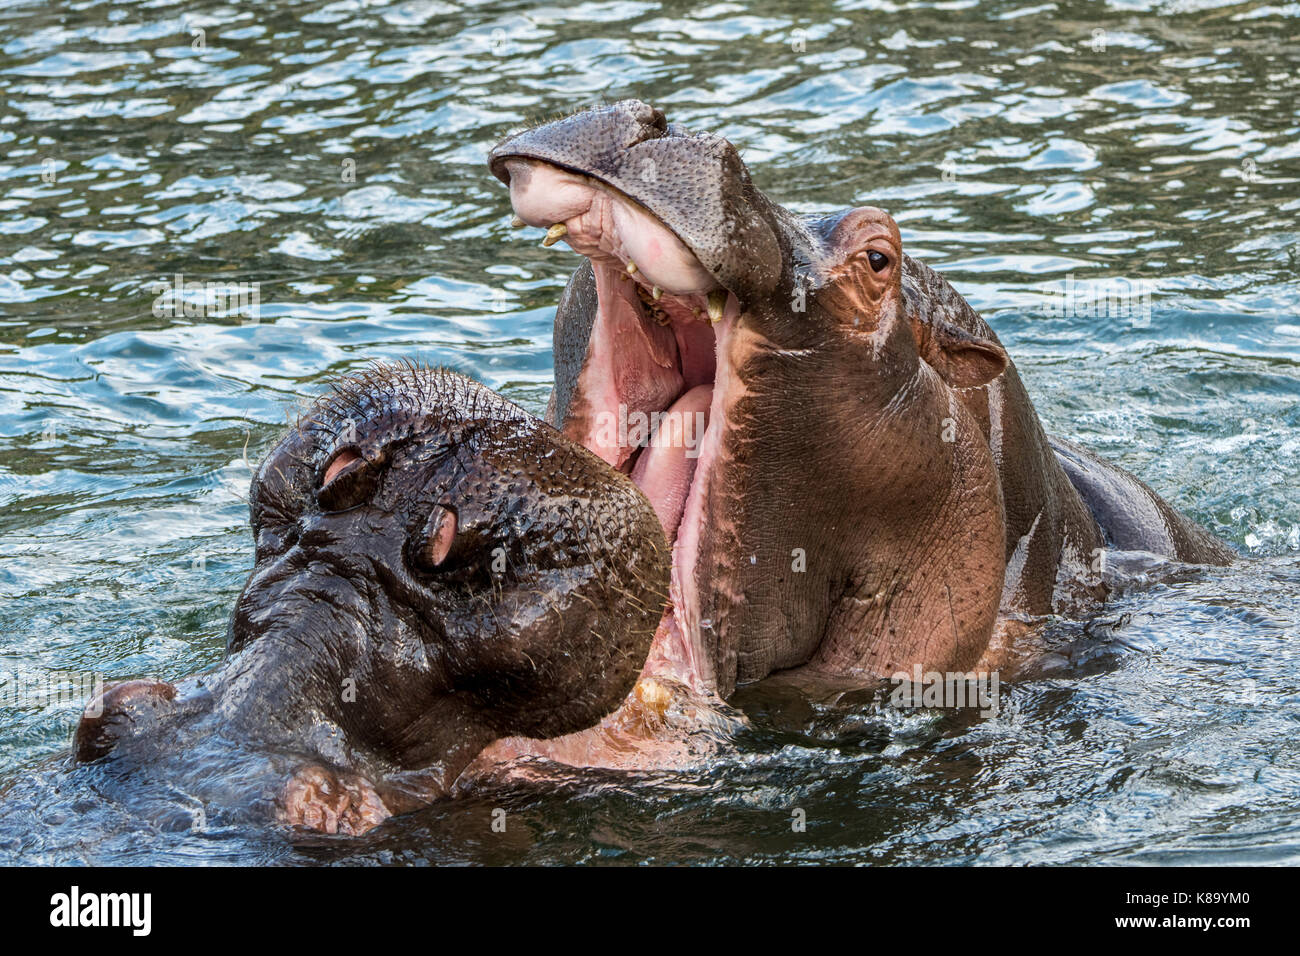 Deux bâillements hippopotames / hippos (Hippopotamus amphibius) dans le lac, les bâillements avec une bouche sert comme une menace afficher Banque D'Images